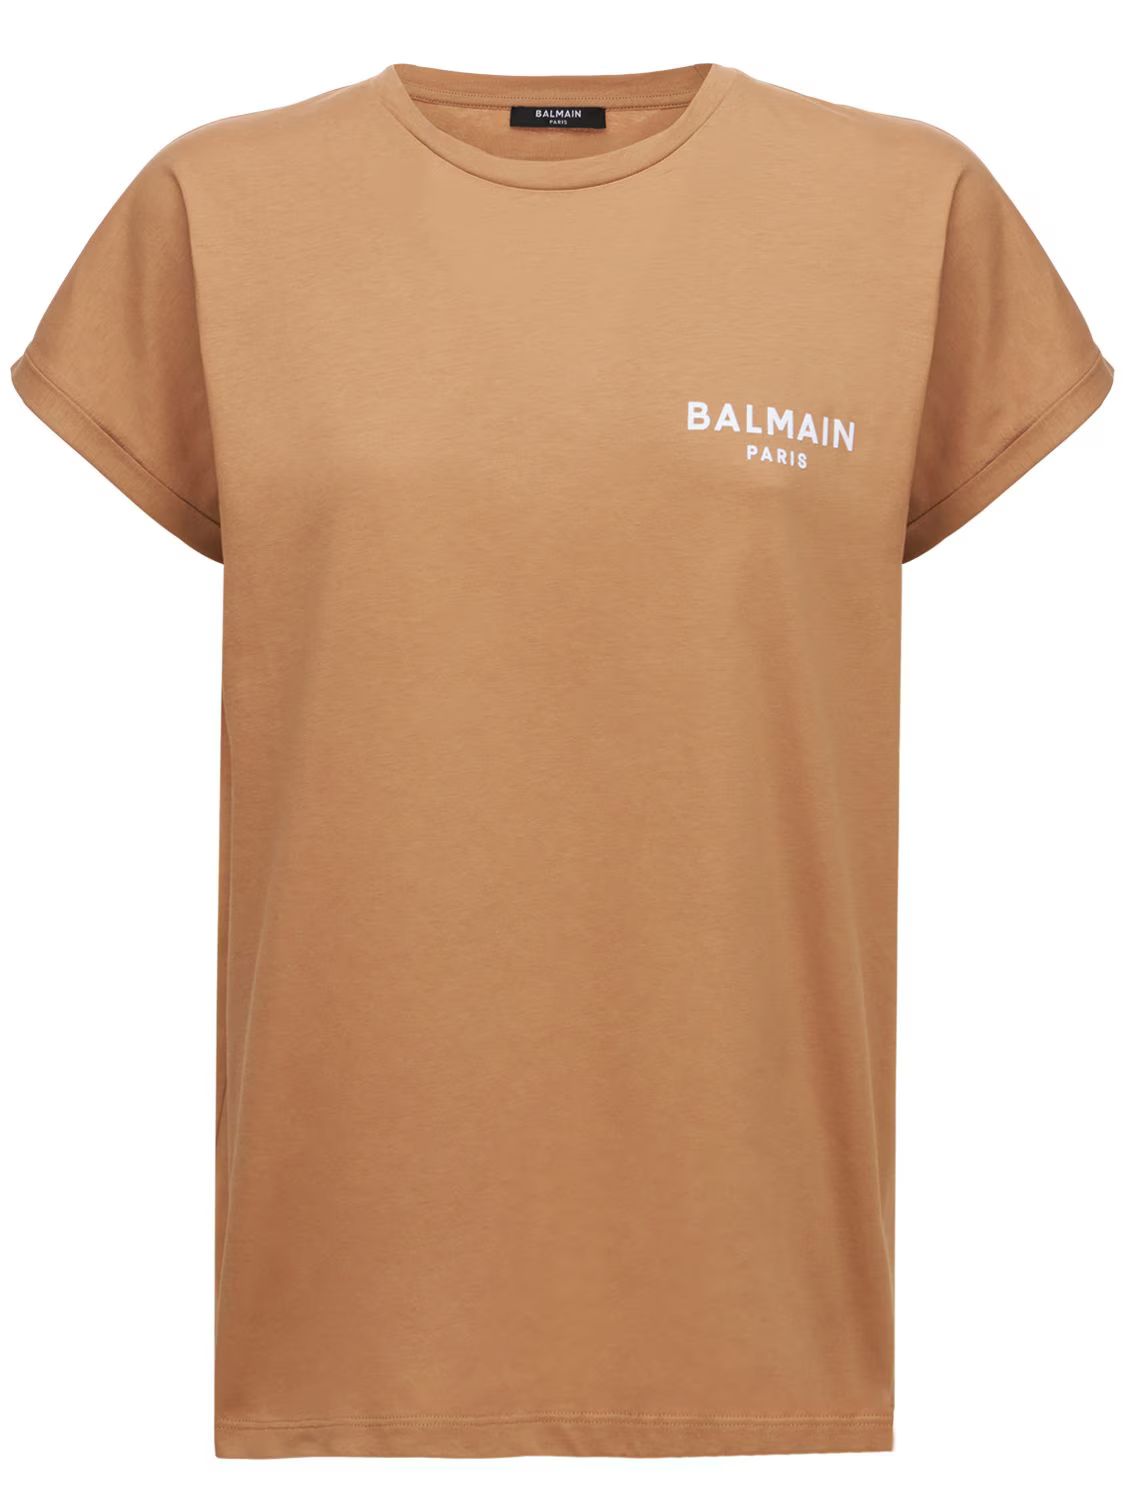 Balmain - Flocked logo cotton jersey t-shirt - Taupe | Luisaviaroma | Luisaviaroma